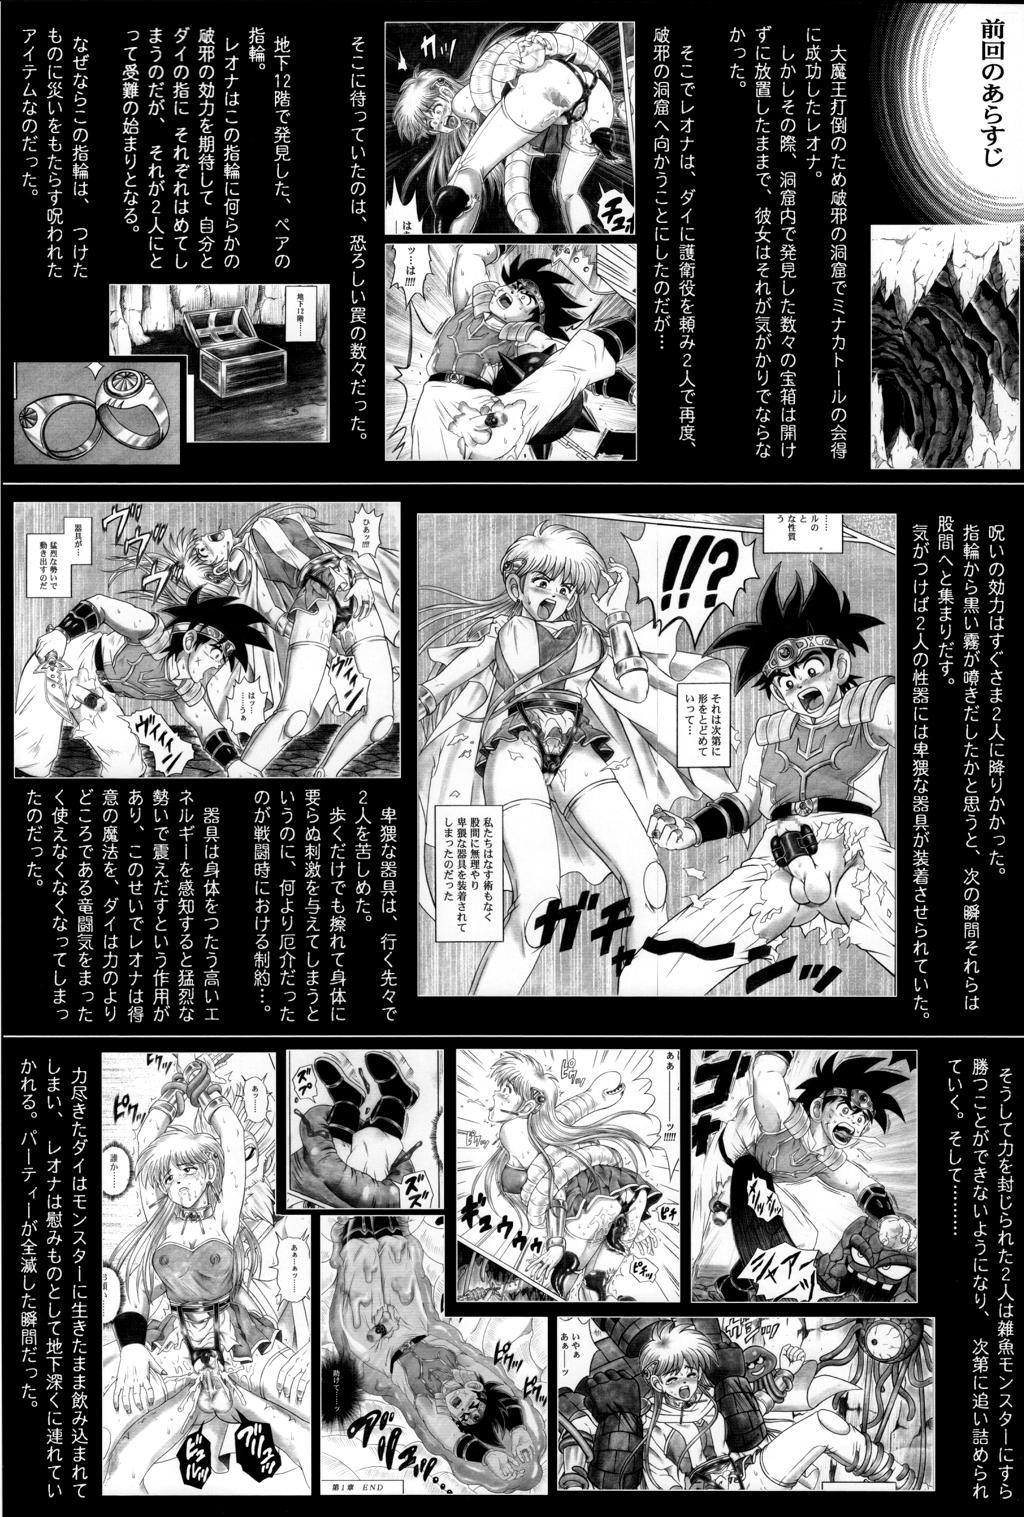 Blacks (C71) [Cyclone (Reizei, Izumi)] STAR TAC IDO ~Youkoso Haja no Doukutsu e~ Dai 4 Shou (Dragon Quest Dai no Daibouken) - Dragon quest dai no daibouken Punish - Page 2